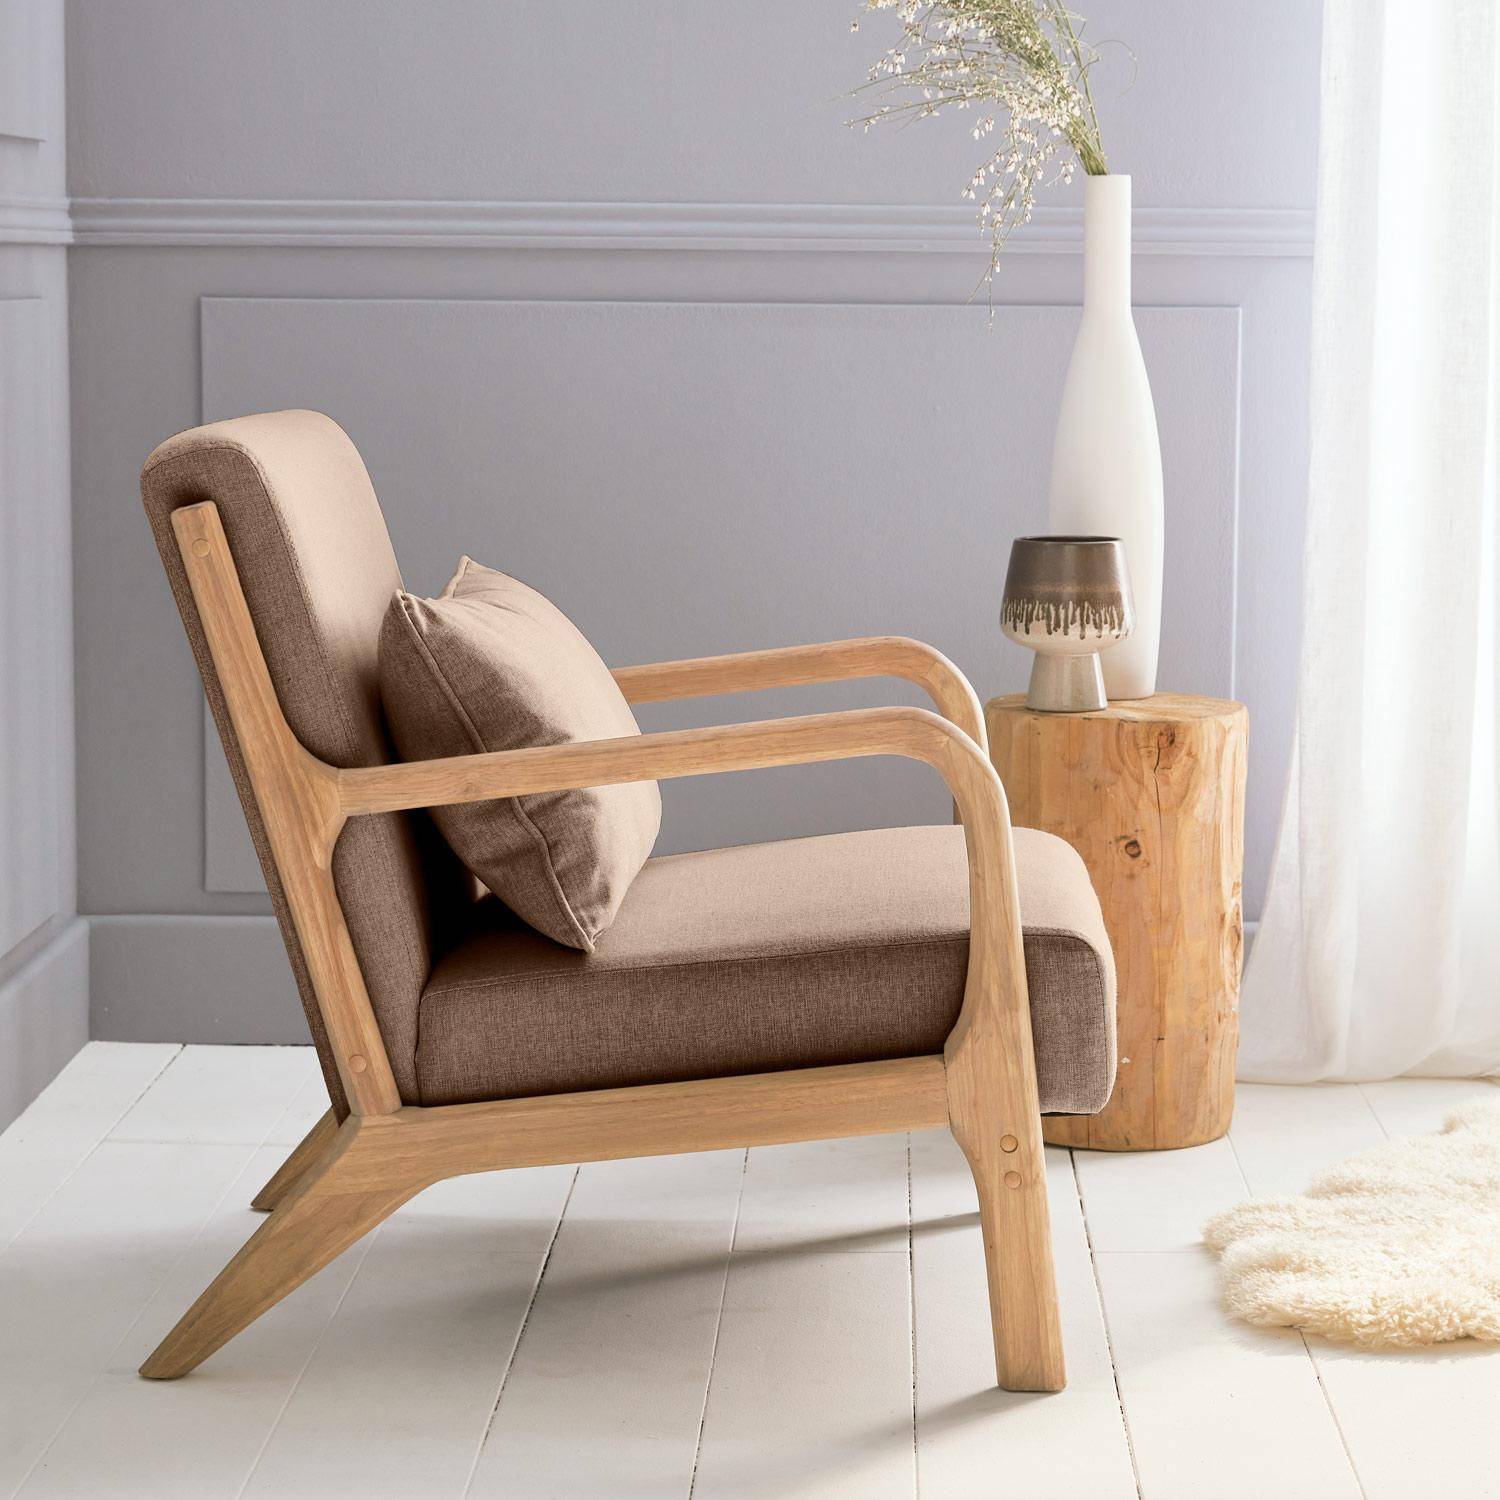 Fauteuil design marron en bois et tissu, 1 place droit fixe, pieds compas scandinave, structure en bois solide, assise confortable  Photo3